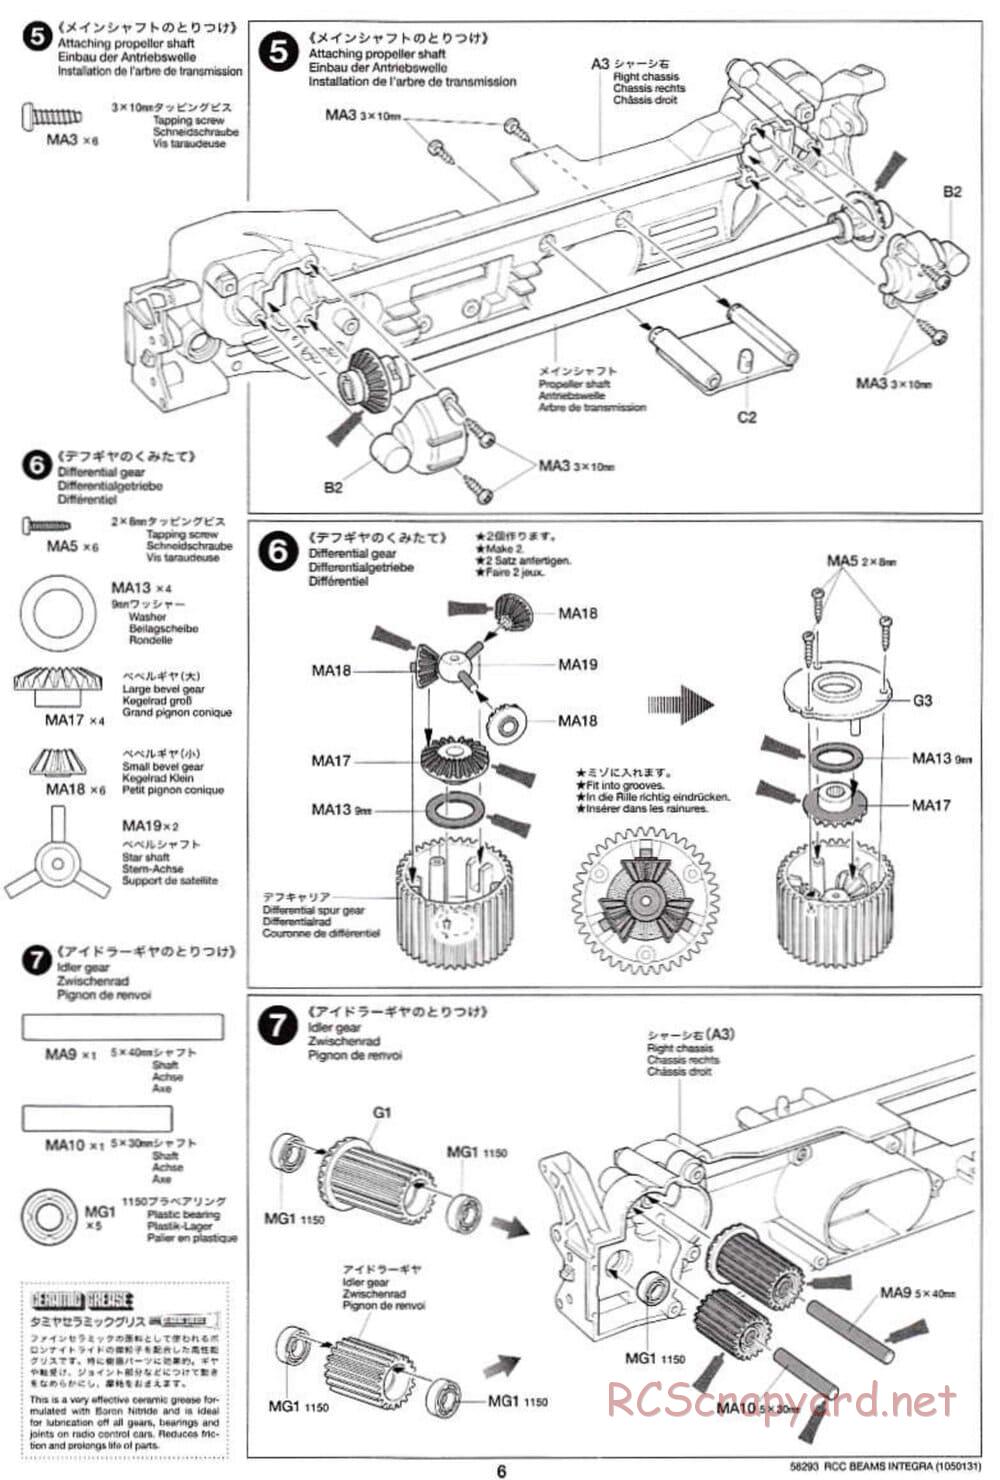 Tamiya - Beams Integra - TL-01 LA Chassis - Manual - Page 6